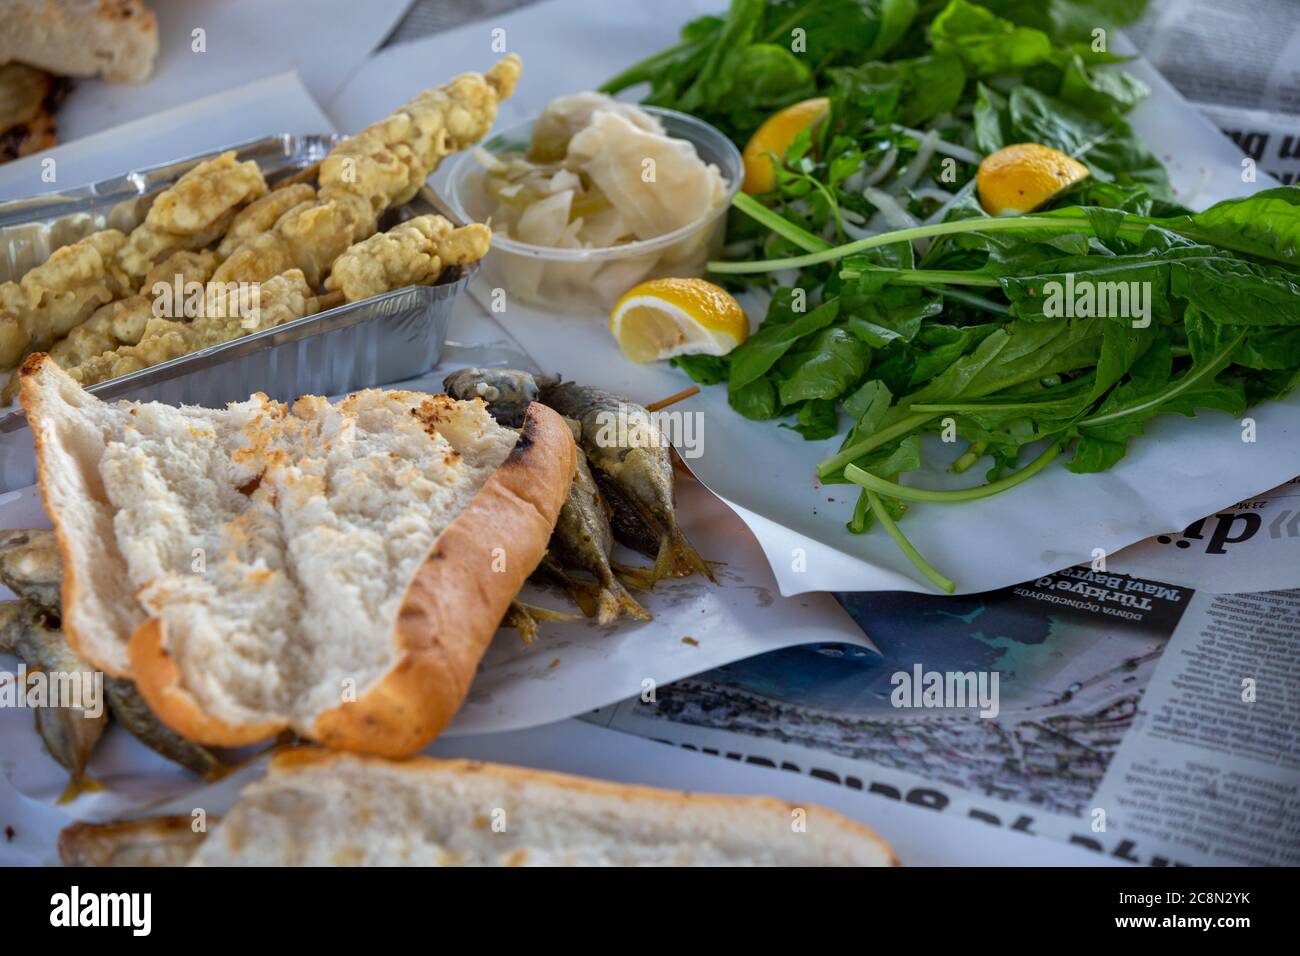 Gros plan sur la nourriture turque, le poisson et le pain Banque D'Images